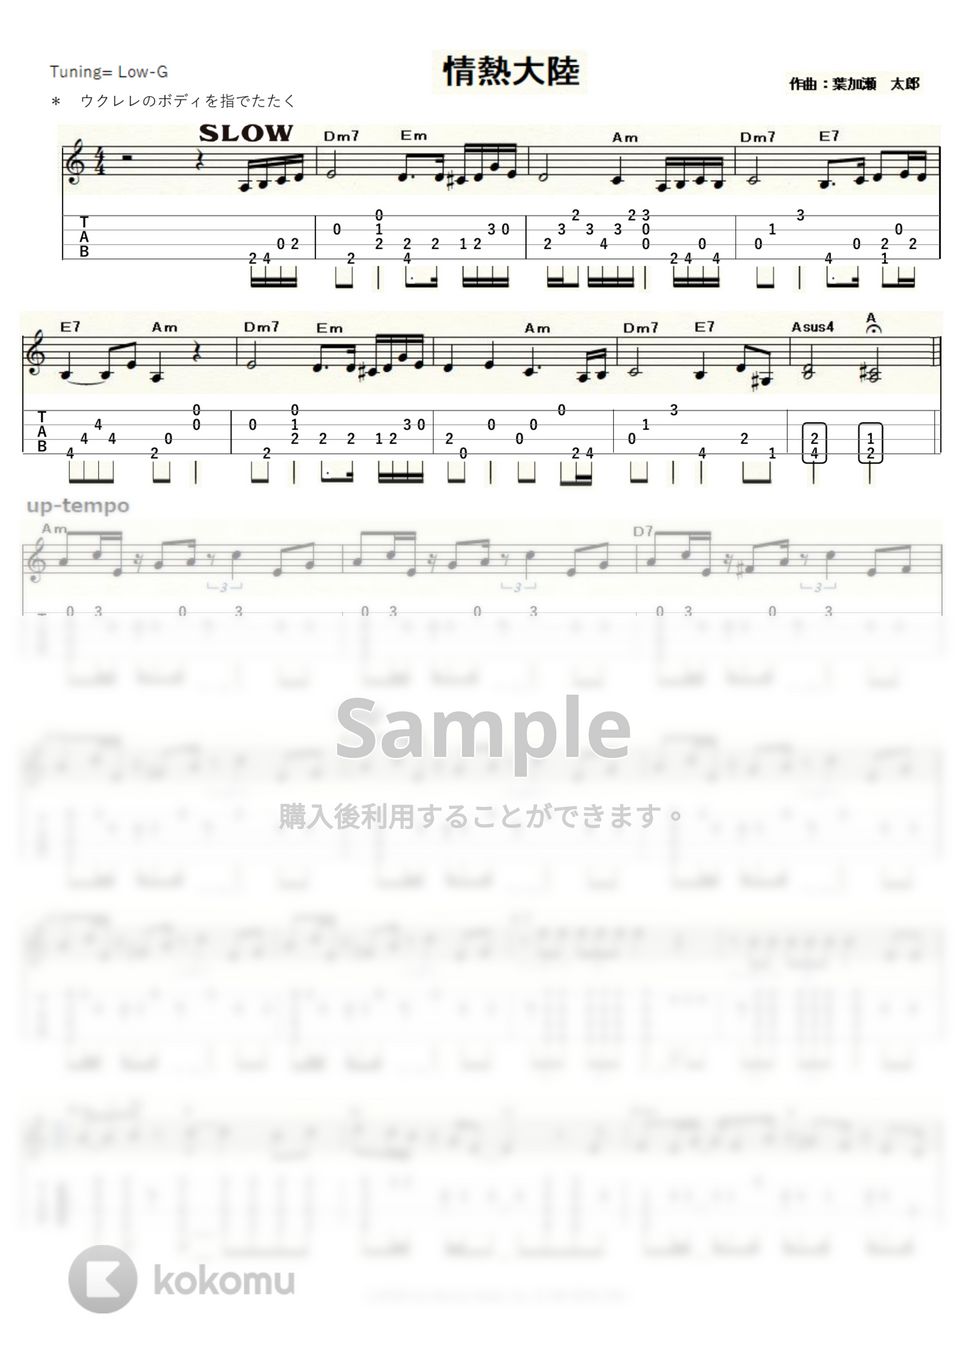 葉加瀬太郎 - 情熱大陸 (Low-G) by ukulelepapa